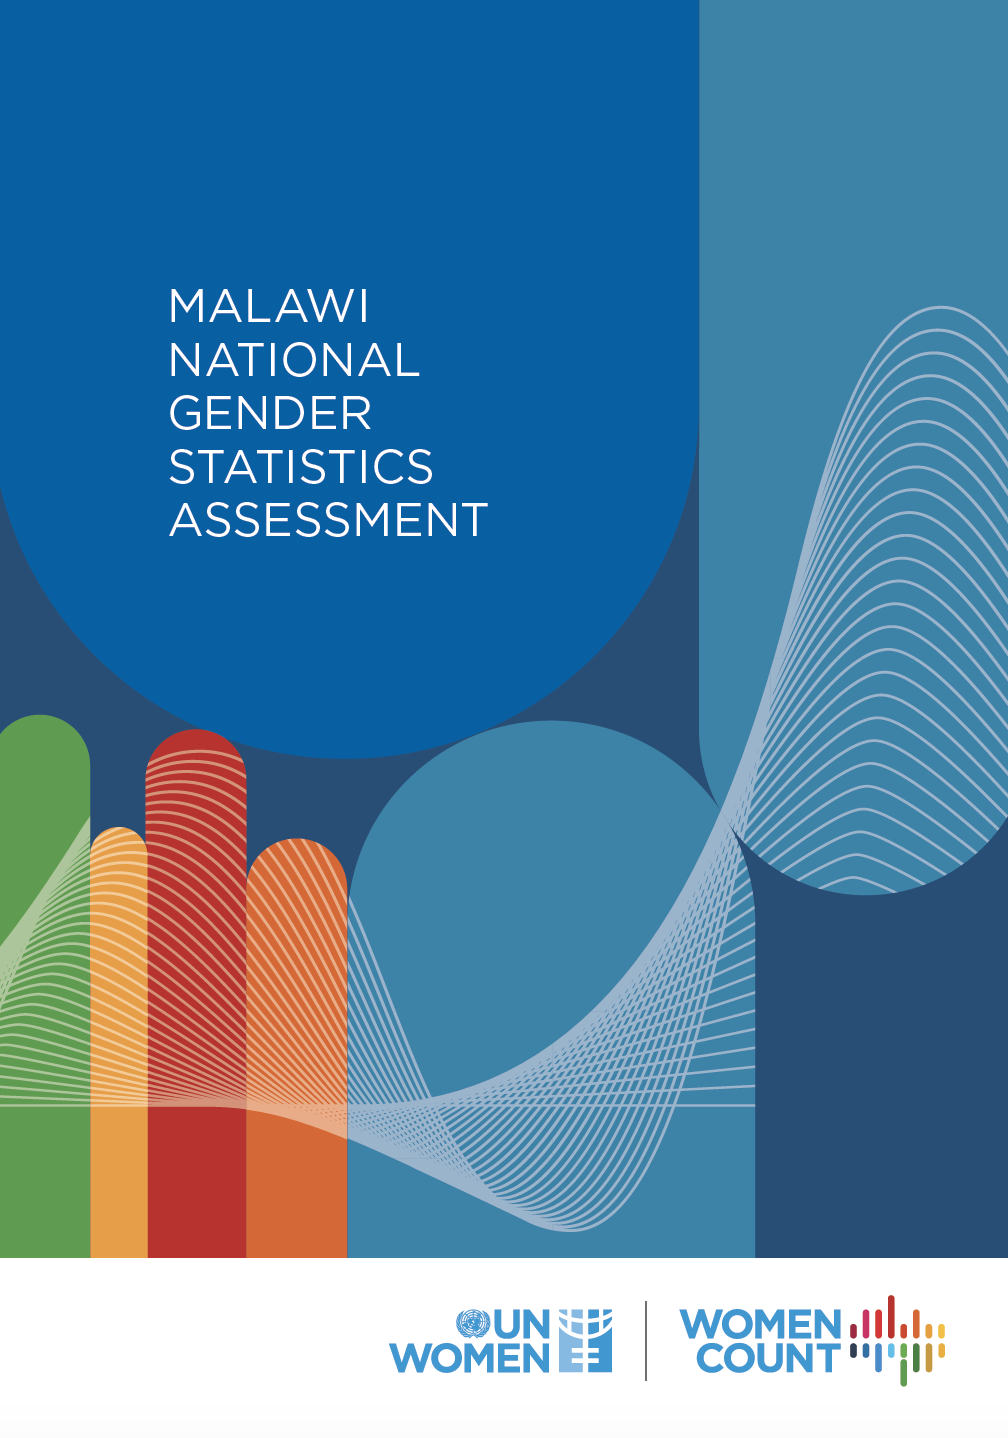 MALAWI NATIONAL GENDER STATISTICS ASSESSMENT